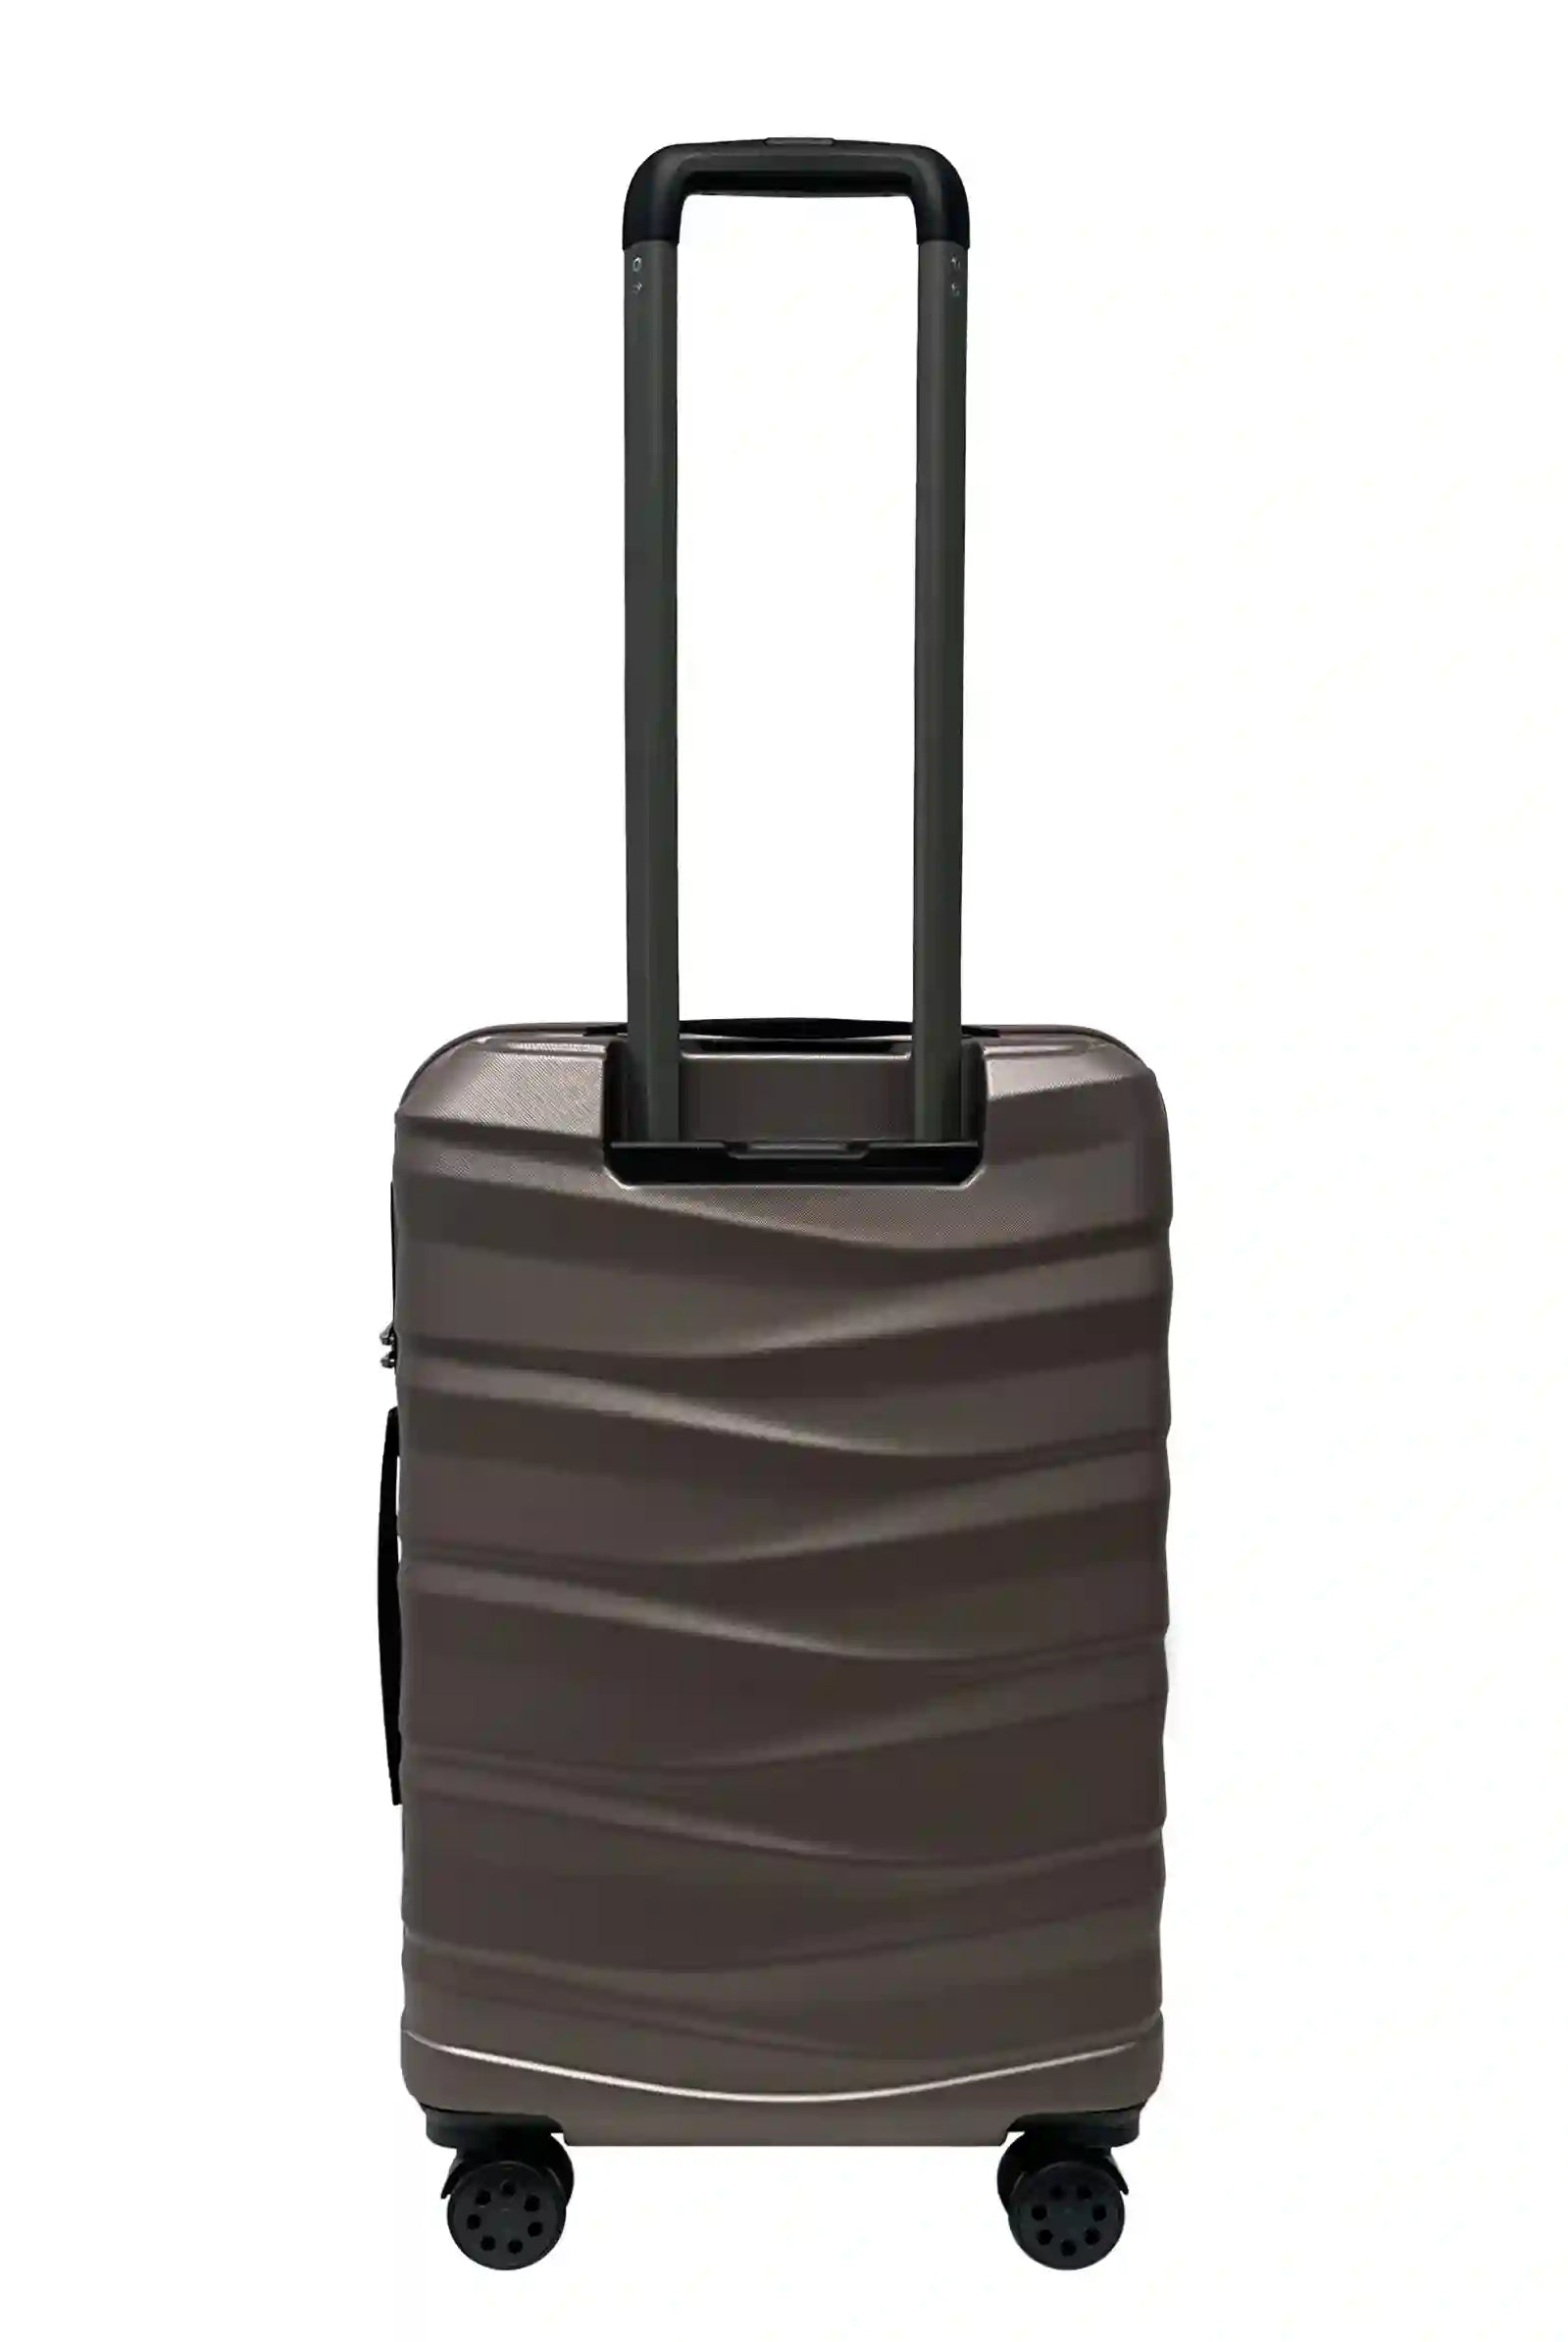 luggage medium suitcase